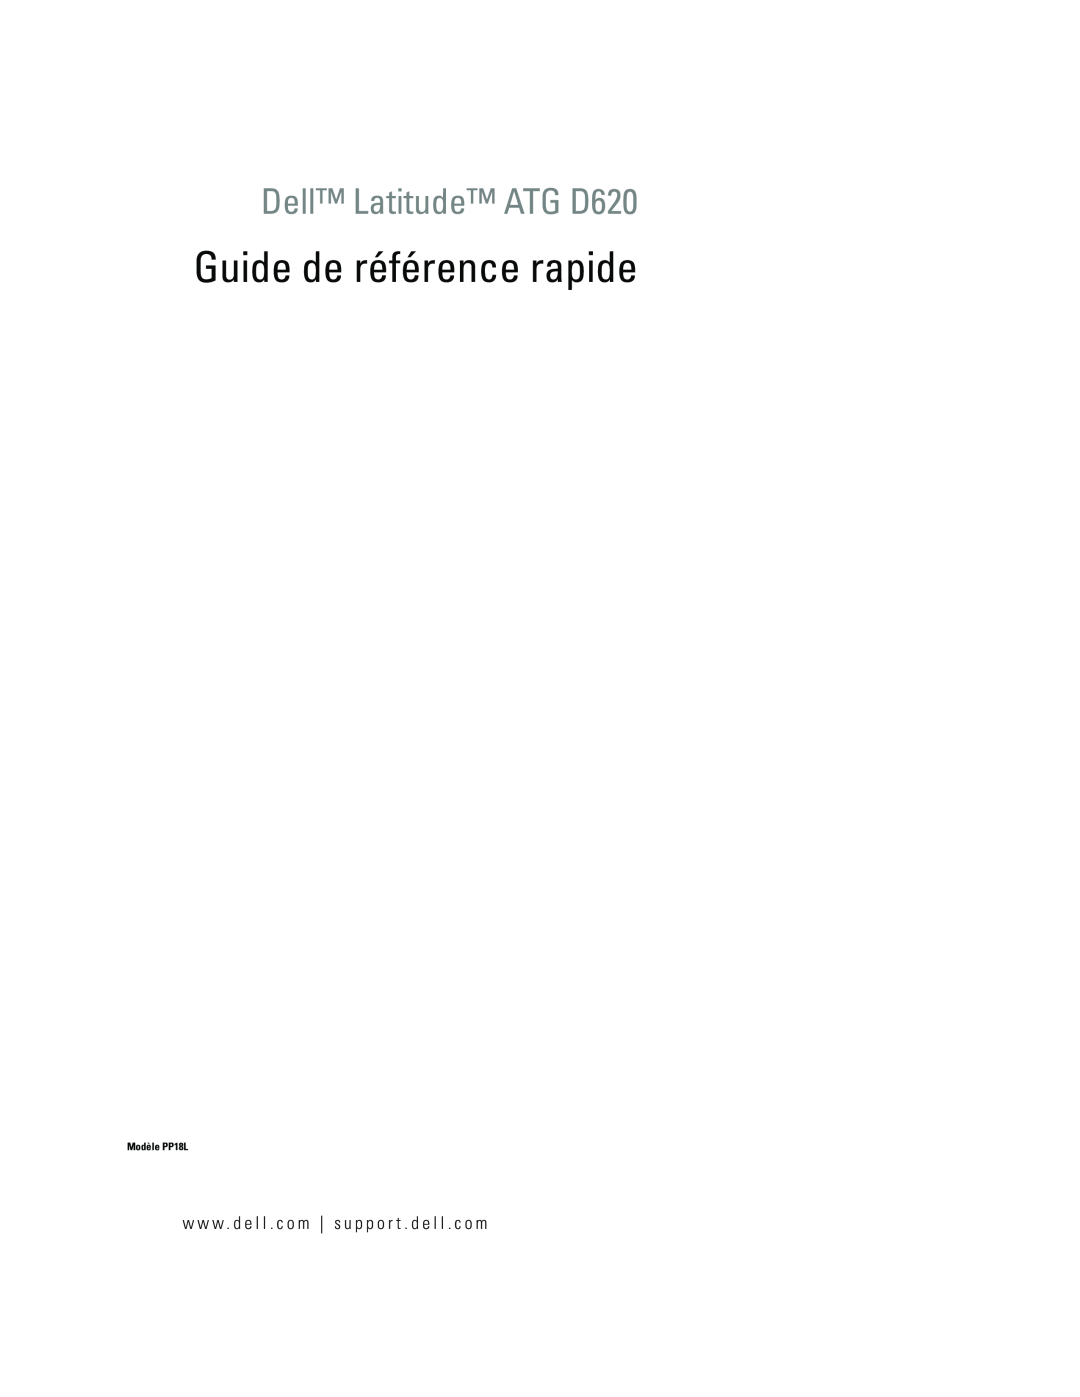 Dell manual Guide de référence rapide, Dell Latitude ATG D620, w w w . d e l l . c o m s u p p o r t . d e l l . c o m 